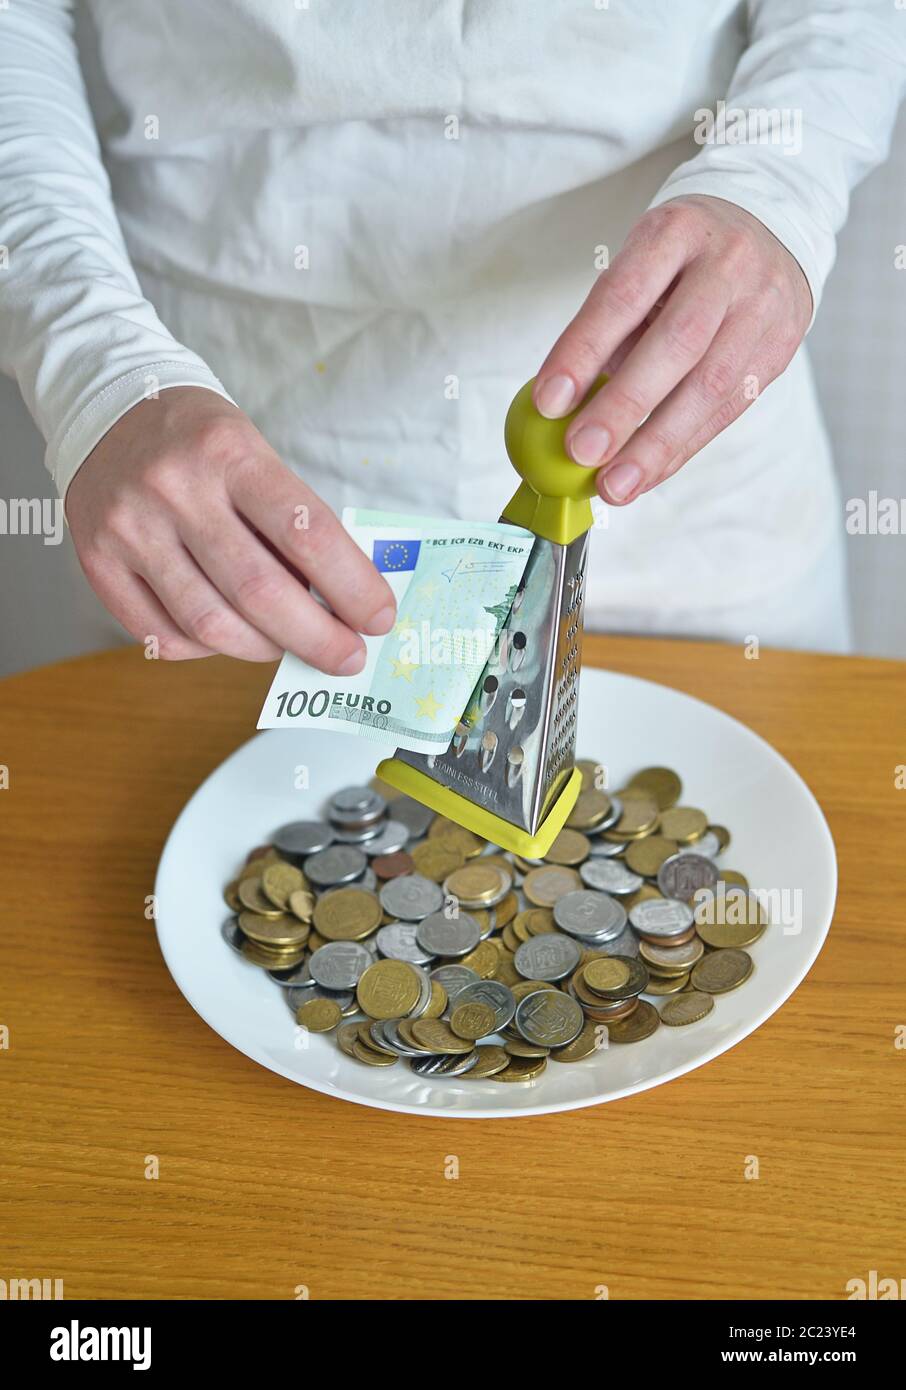 échangez des euros contre des centimes avec un râleur Banque D'Images